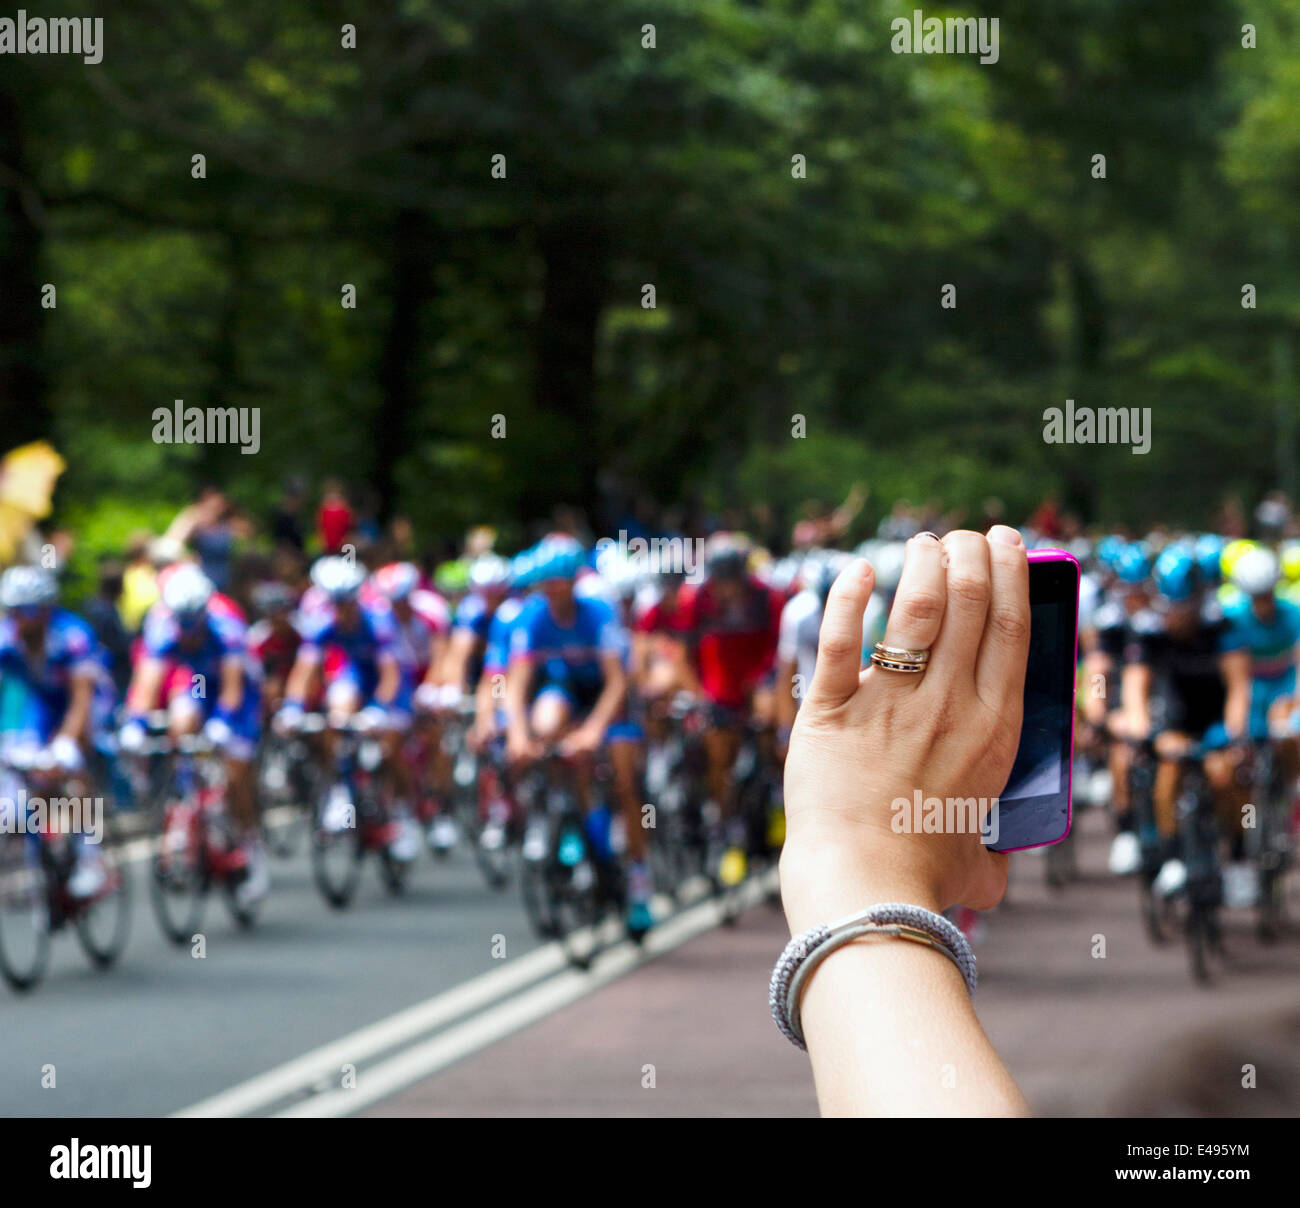 Frau, die ein Foto mit einem Smartphone das Hauptfeld nähert sich Holmfirth am 2. Etappe der Tour de France 2014. Tausende von Menschen die Straßen gesäumt von vielen drängeln, um Fotos der schnellere Fahrer zu machen. West Yorkshire, Großbritannien Stockfoto